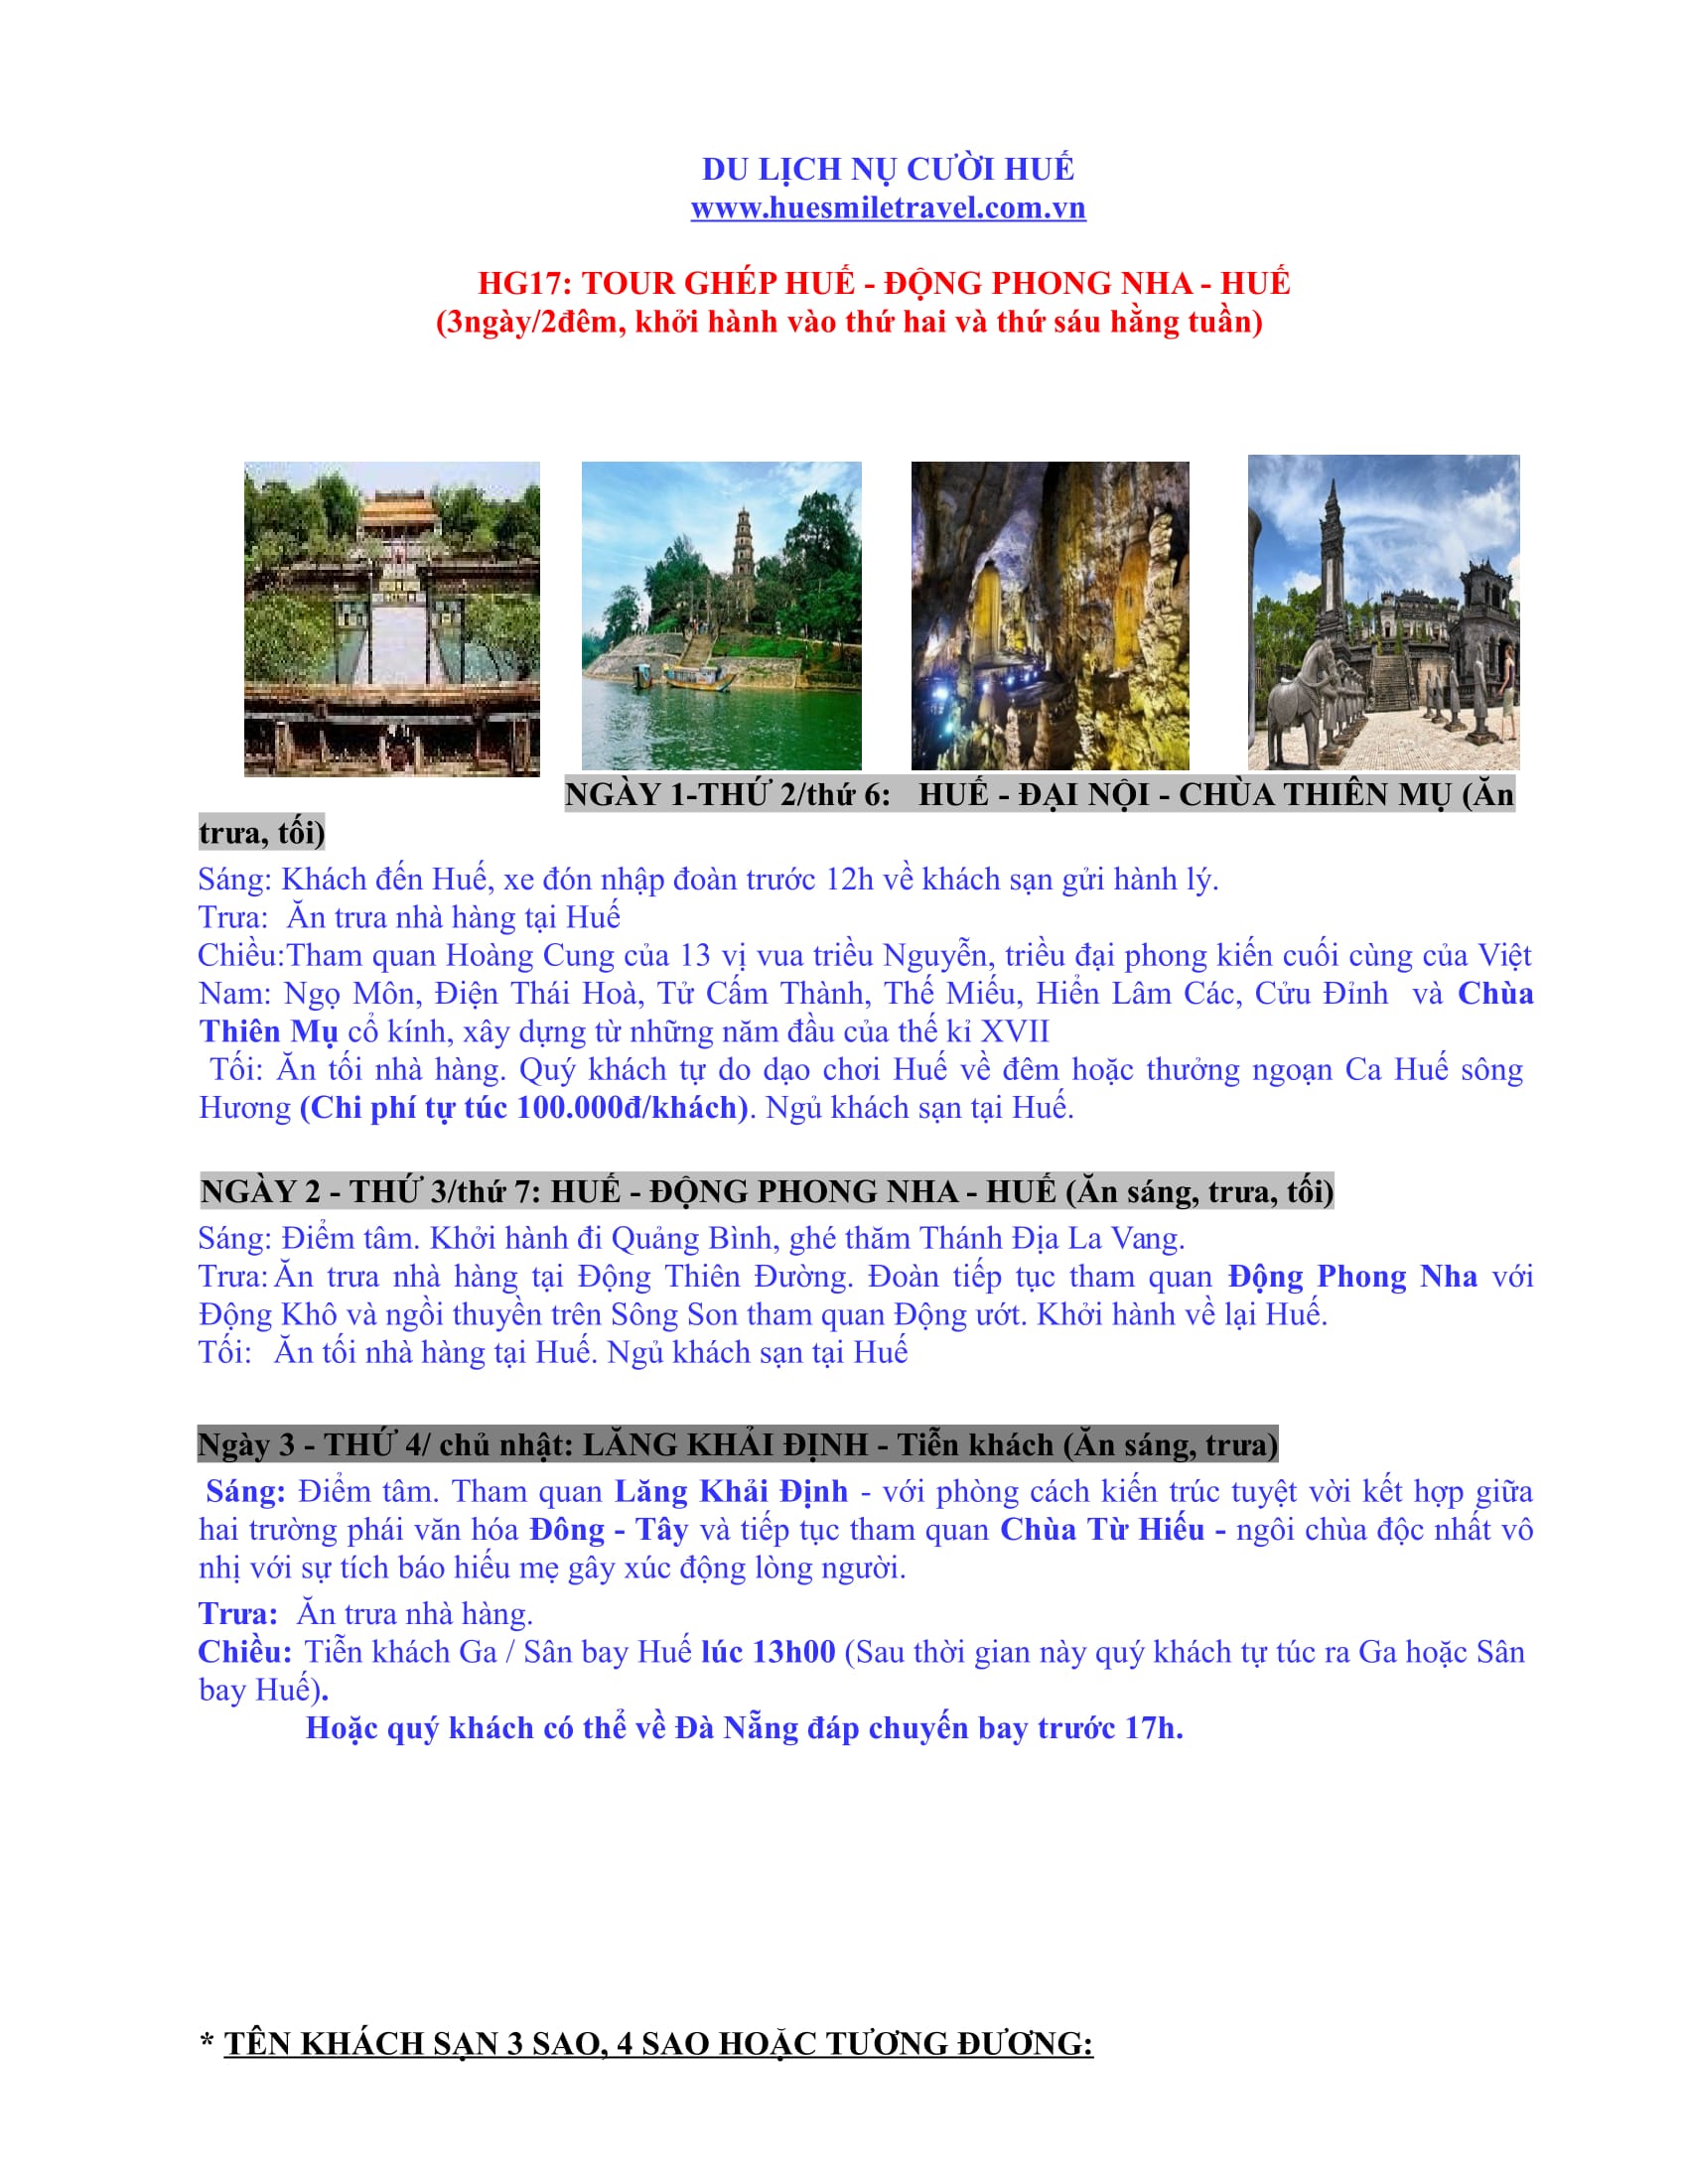 Tour ghép Huế - Động Phong Nha - Huế - Huế Smile Travel - Công Ty TNHH Thương Mại Và Du Lịch Nụ Cười Huế